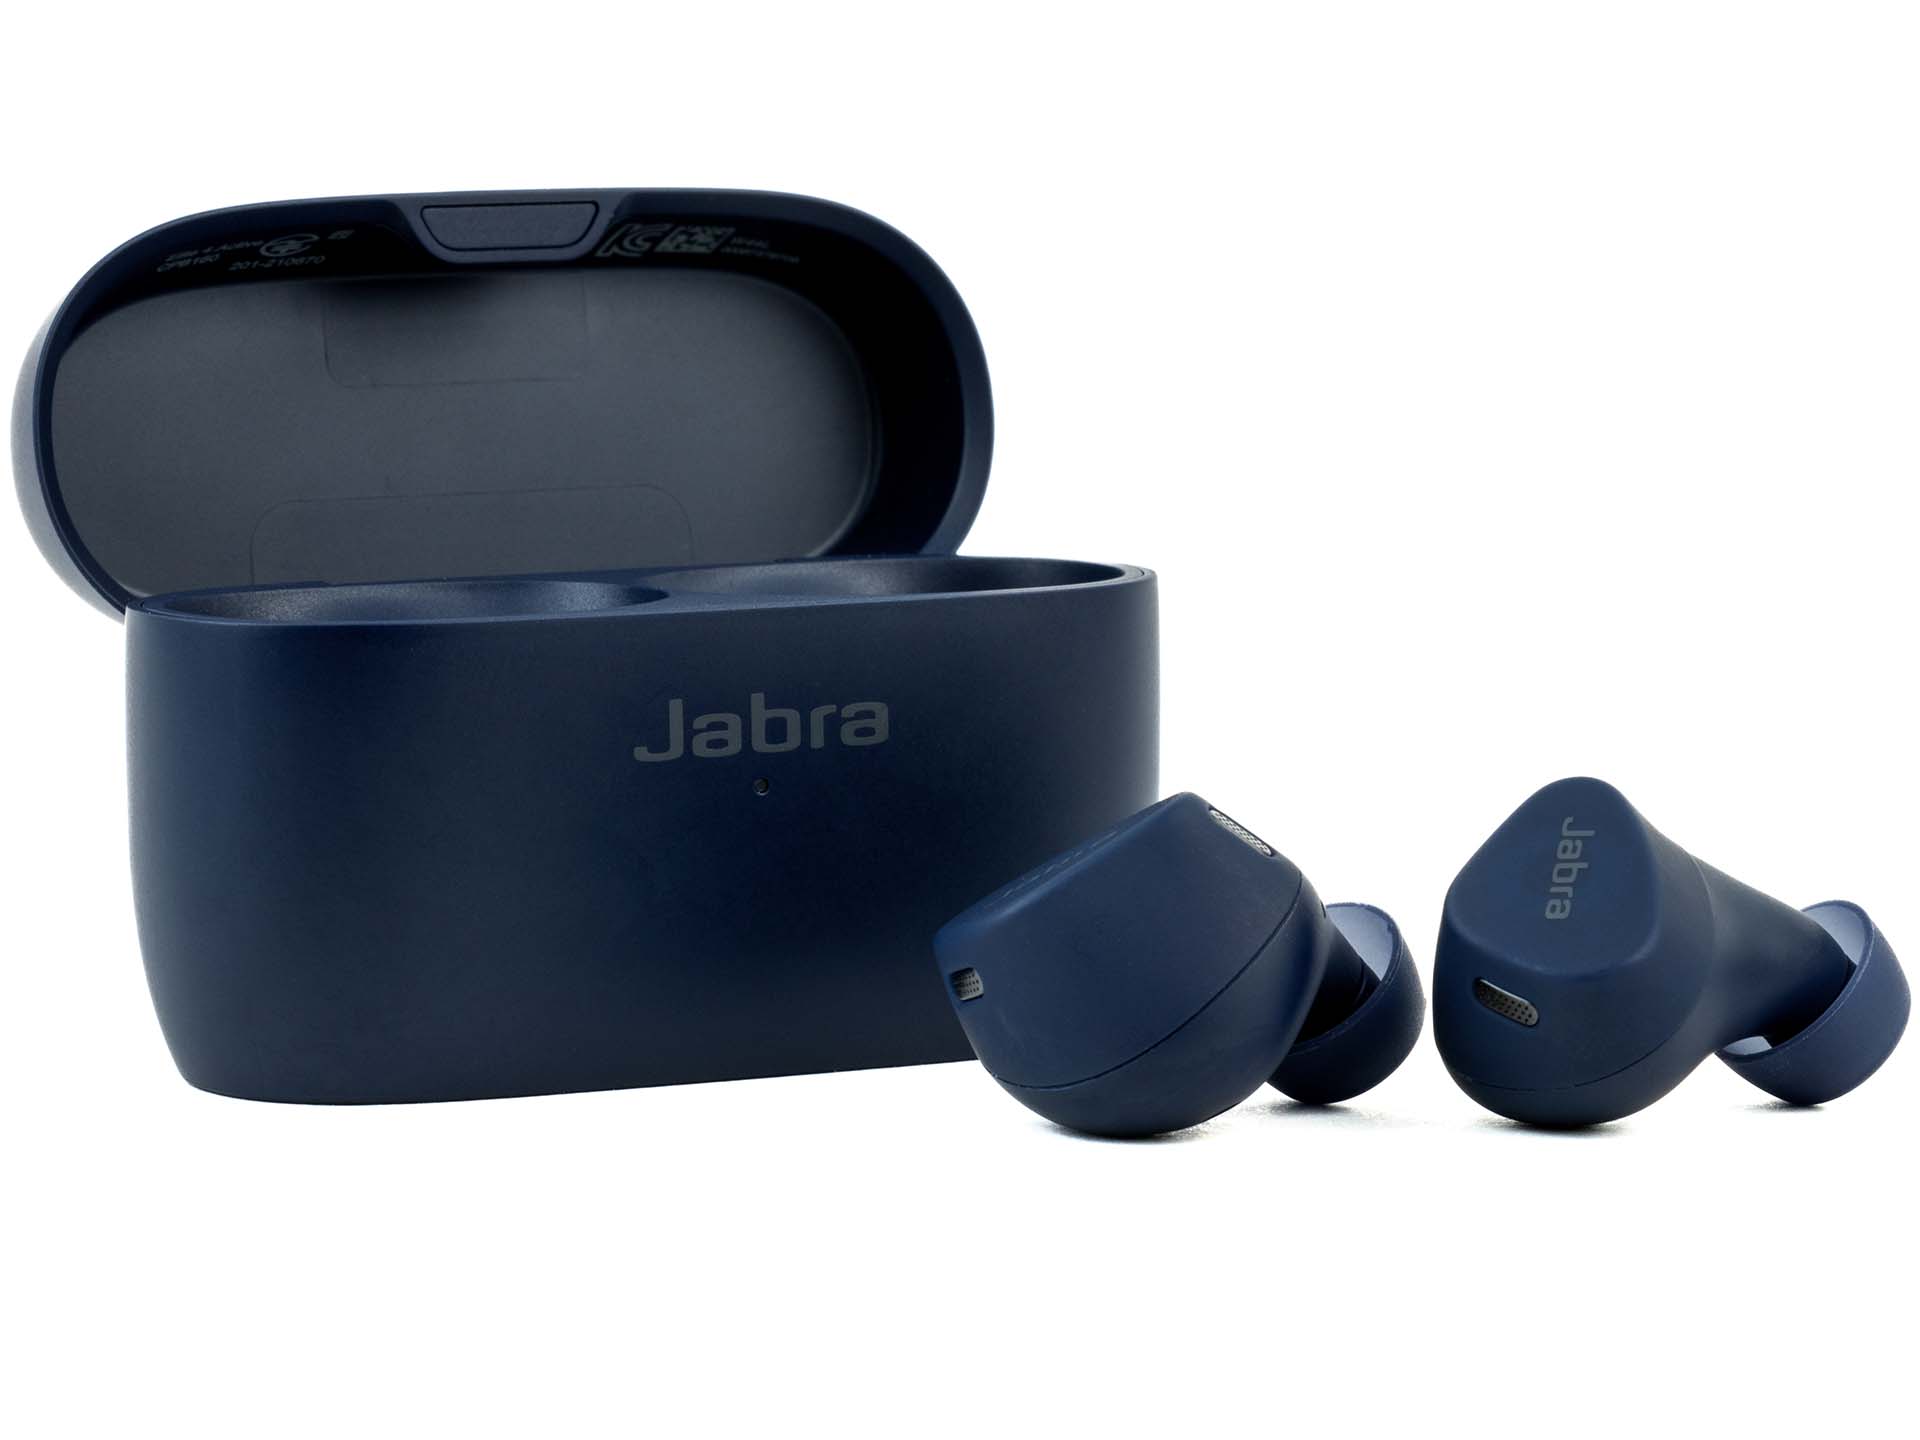 Probamos los Jabra Elite 4: unos buenos auriculares baratos para